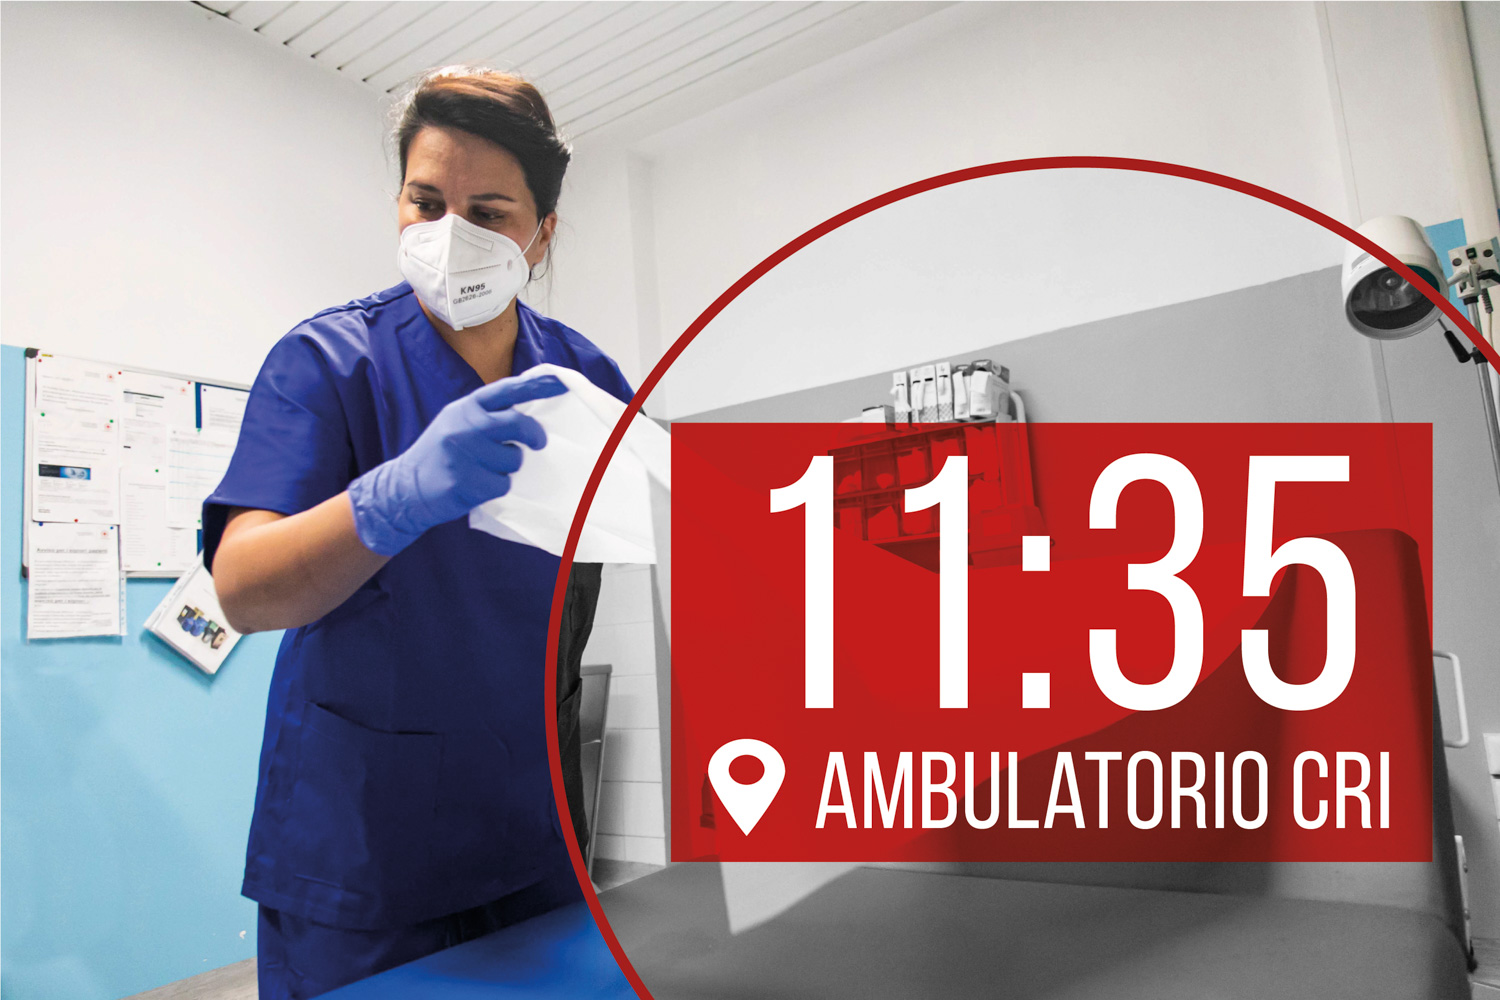 11:35, ambulatorio CRI